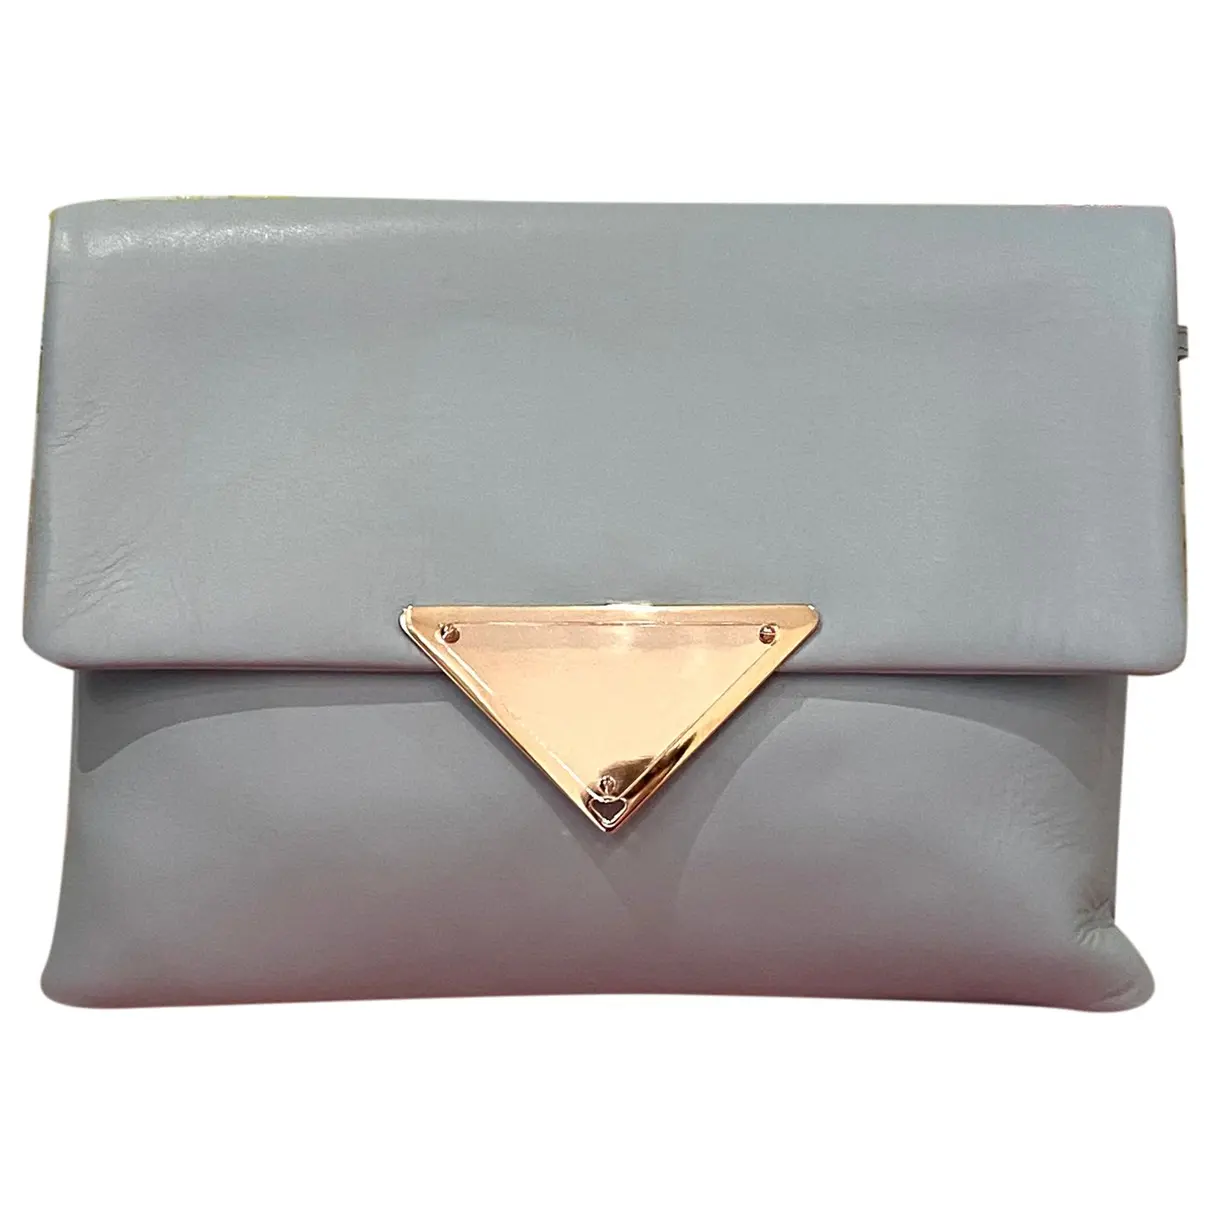 Leather handbag Sara Battaglia